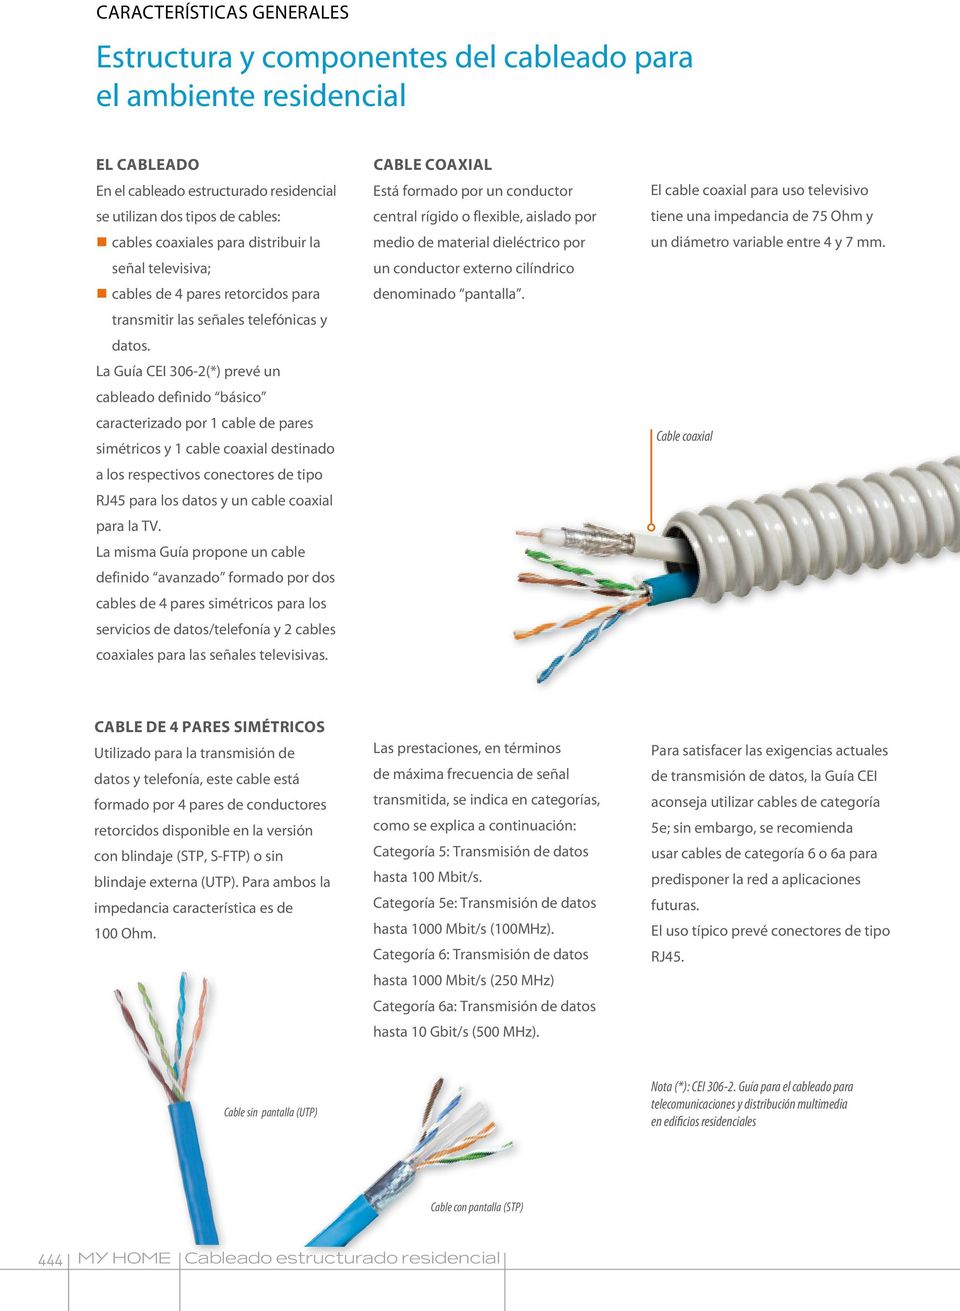 La Guía CEI 306-2(*) prevé un cableado definido básico caracterizado por cable de pares simétricos y cable coaxial destinado a los respectivos conectores de tipo RJ45 para los datos y un cable